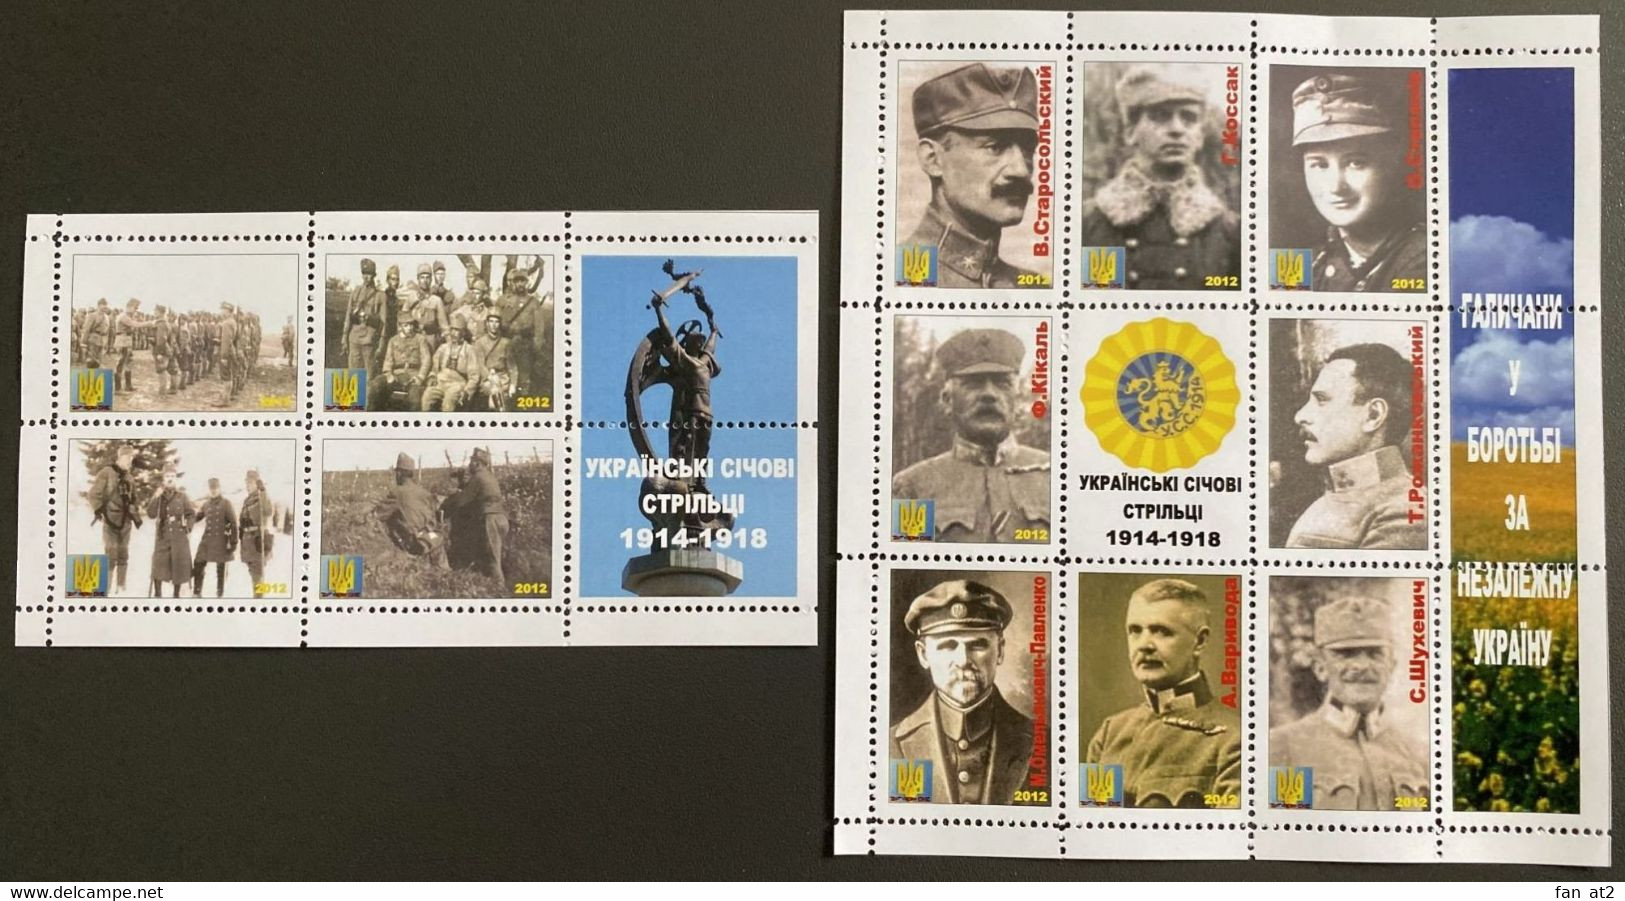 UKRAINE Private Issue Vignettes History Ukrainian Sich Riflemen 1914-1918. 2012 - Ukraine